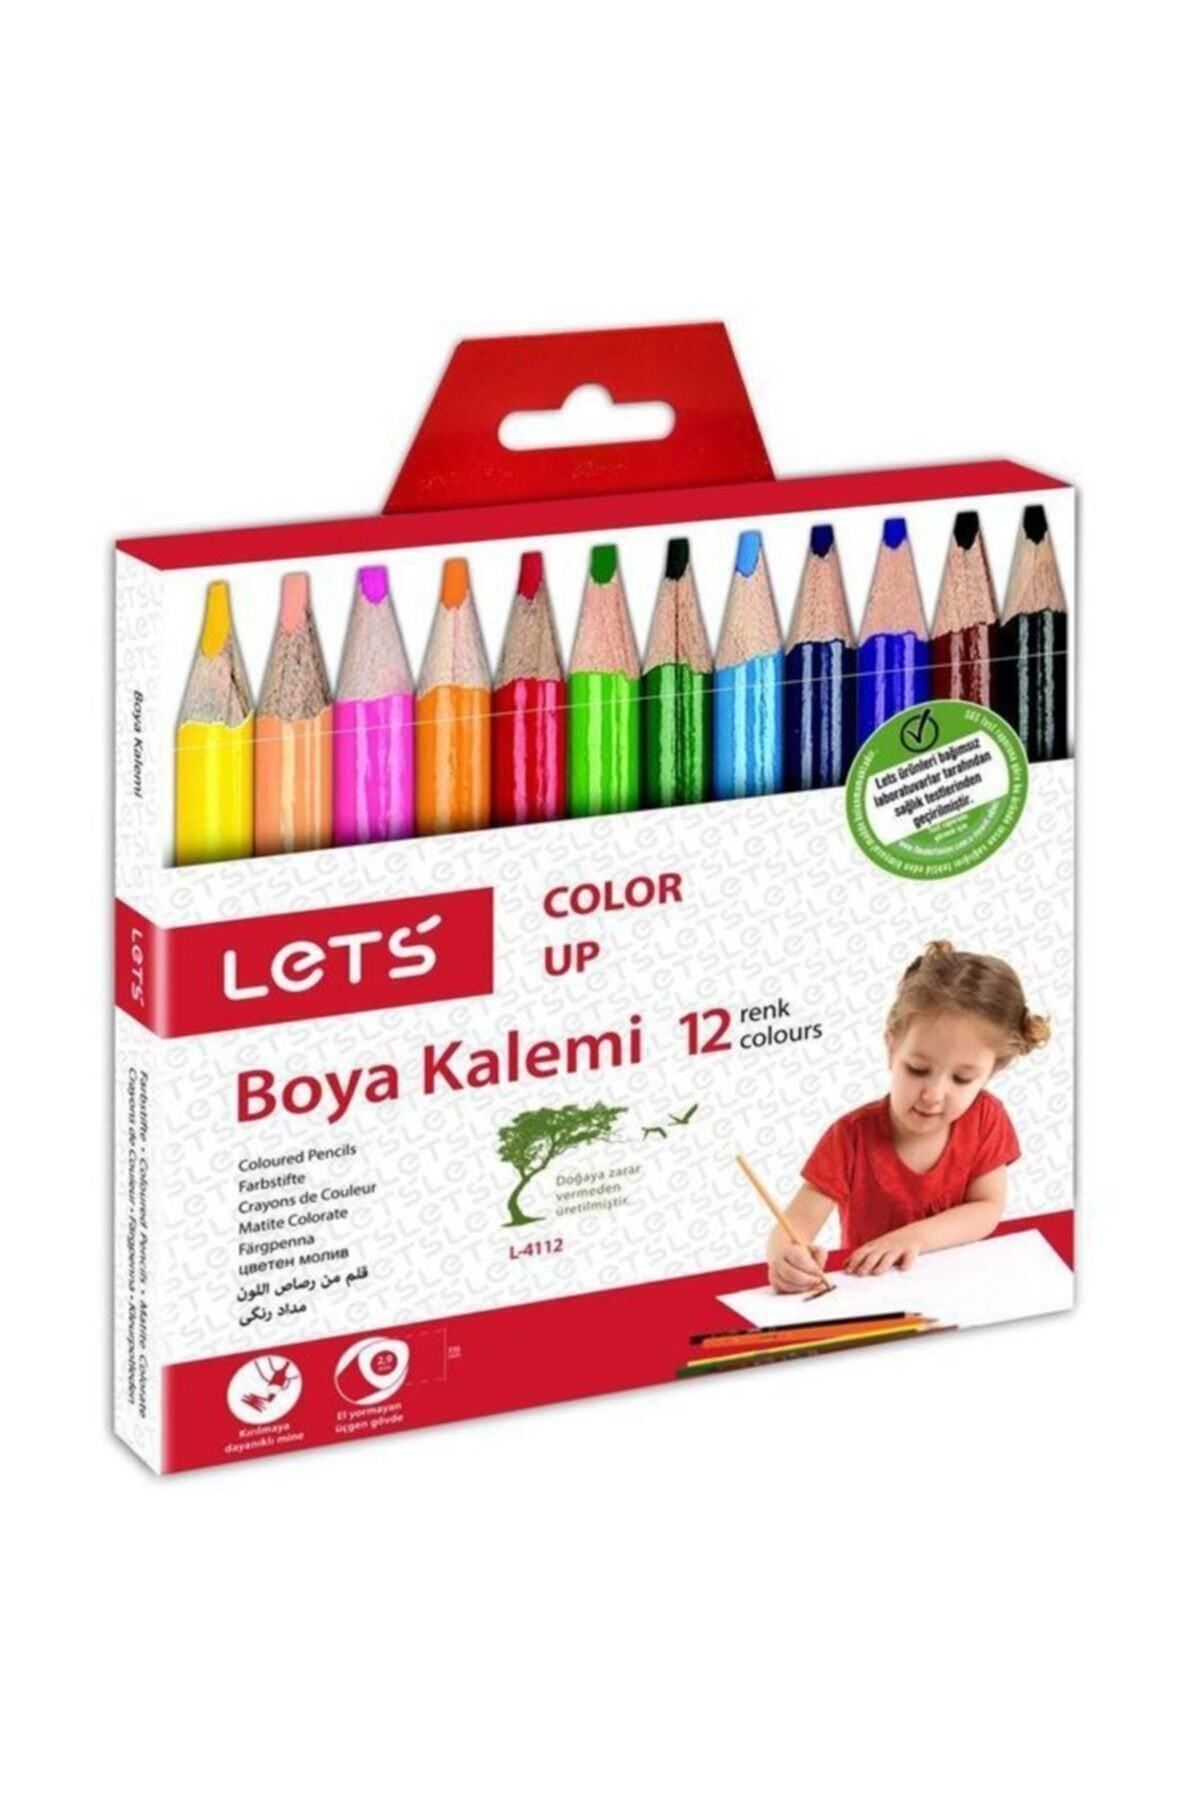 Lets 12 Renk Yarım Boy Boya Kalemi L-4112